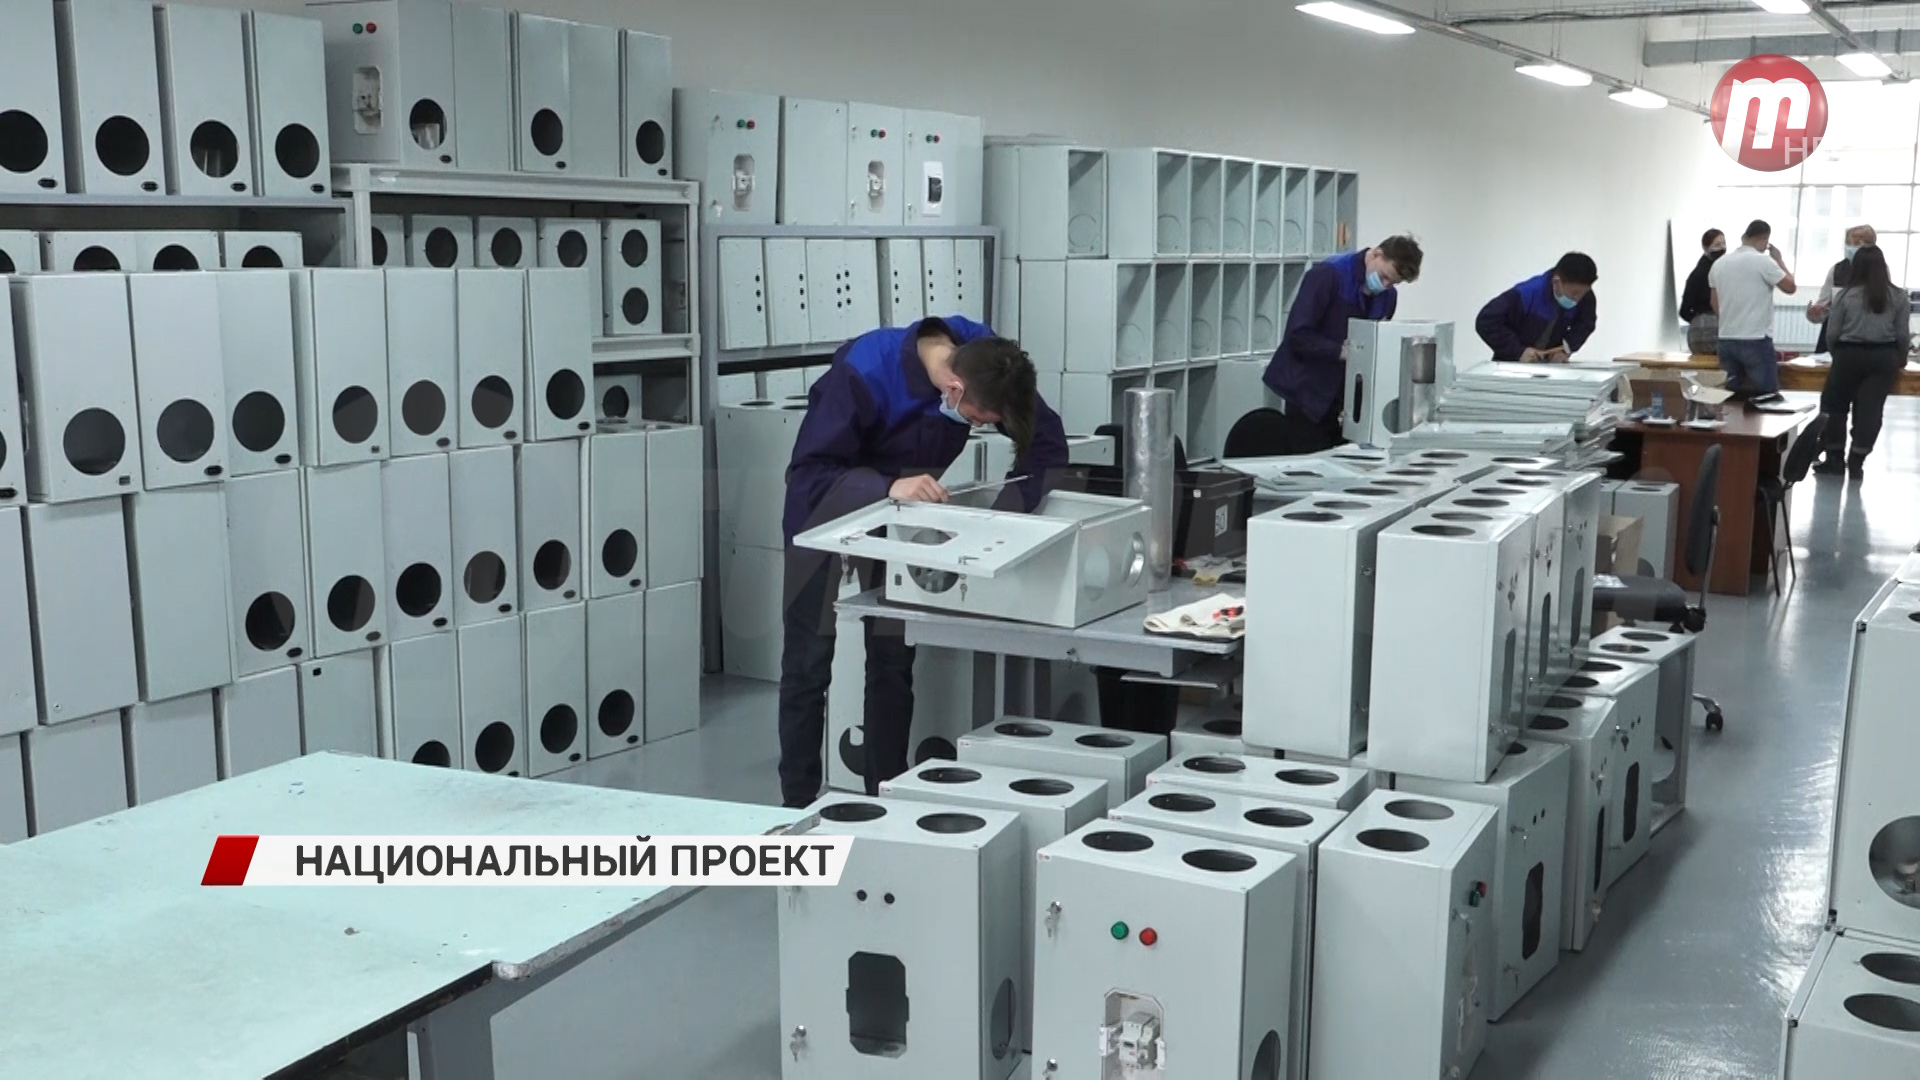 13 предприятий из Бурятии вошли в список нацпроекта инициированного Владимиром Путиным